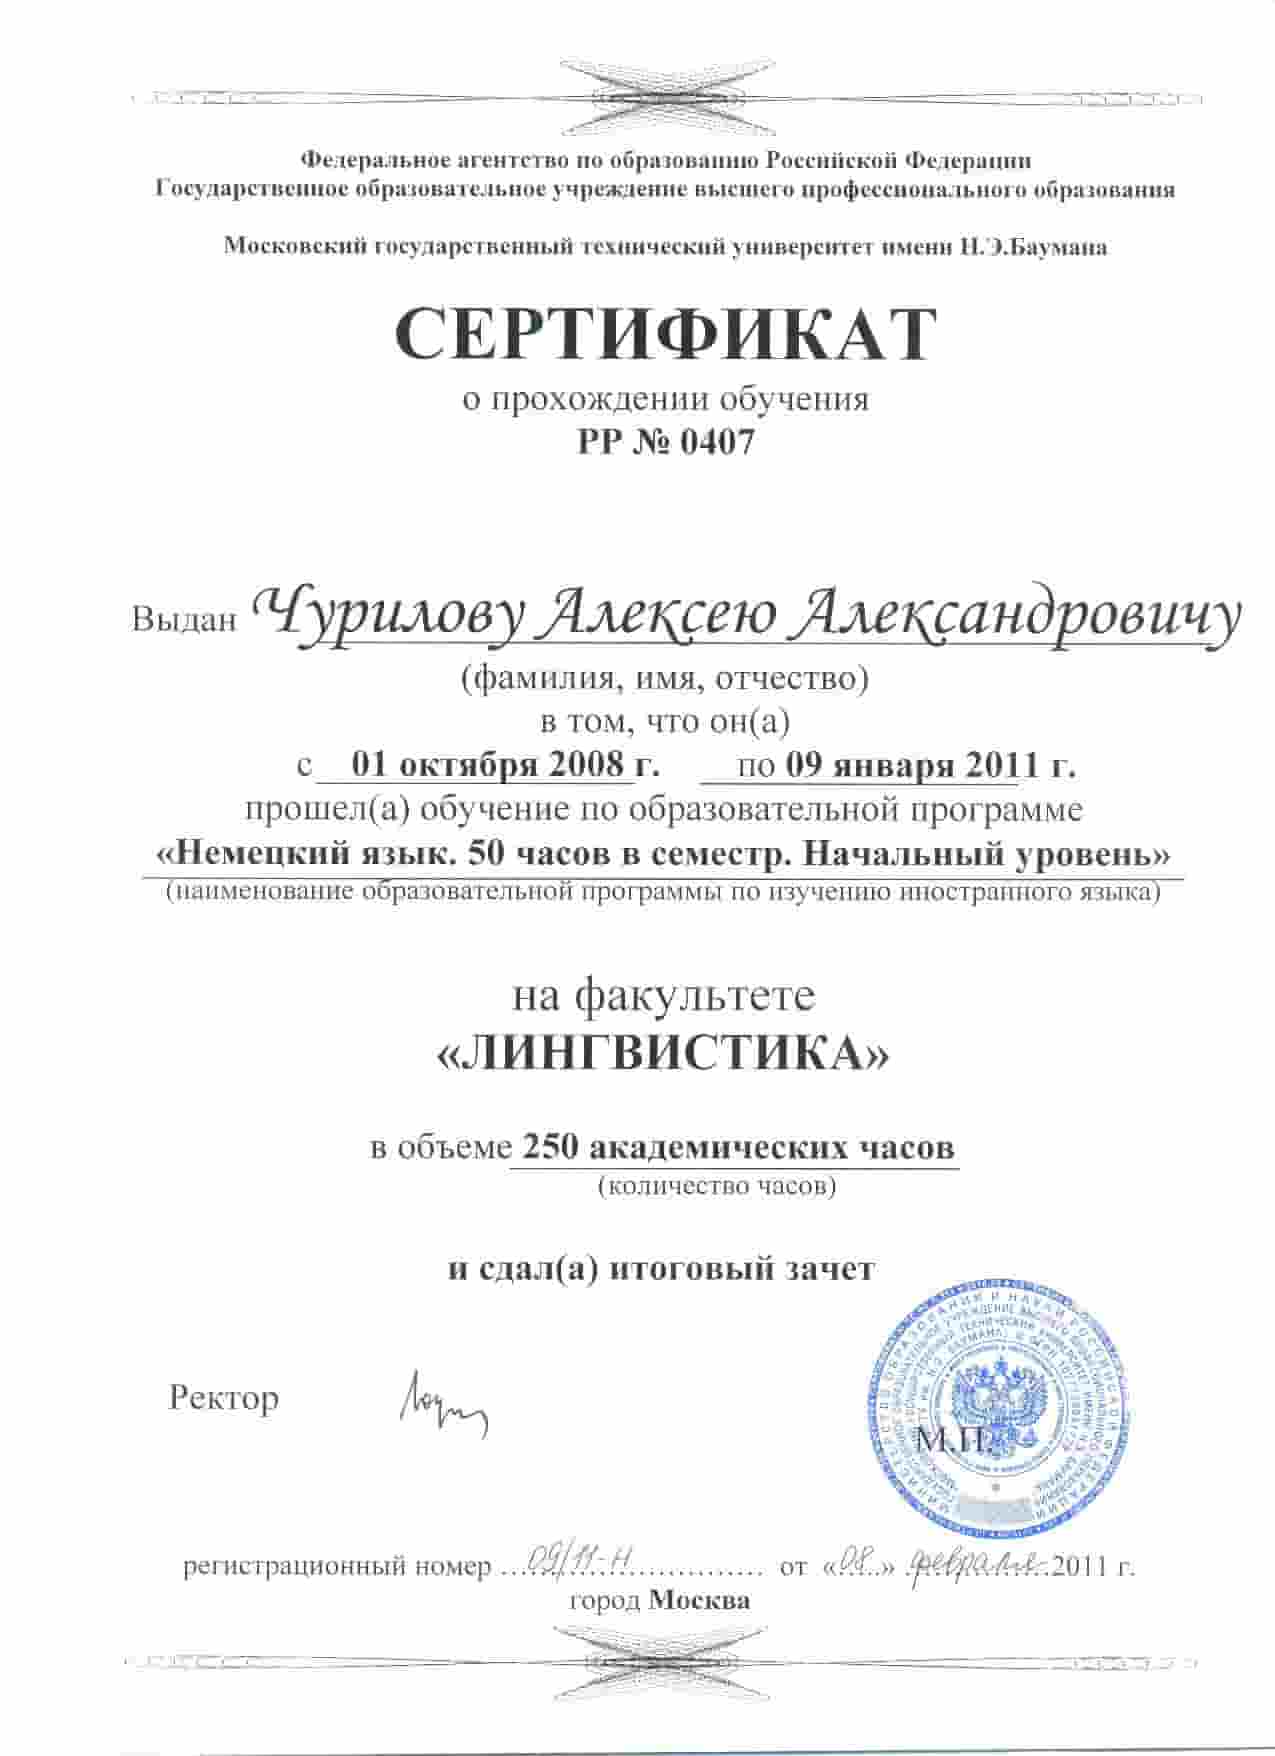 Сертификат Чурилов А.А.